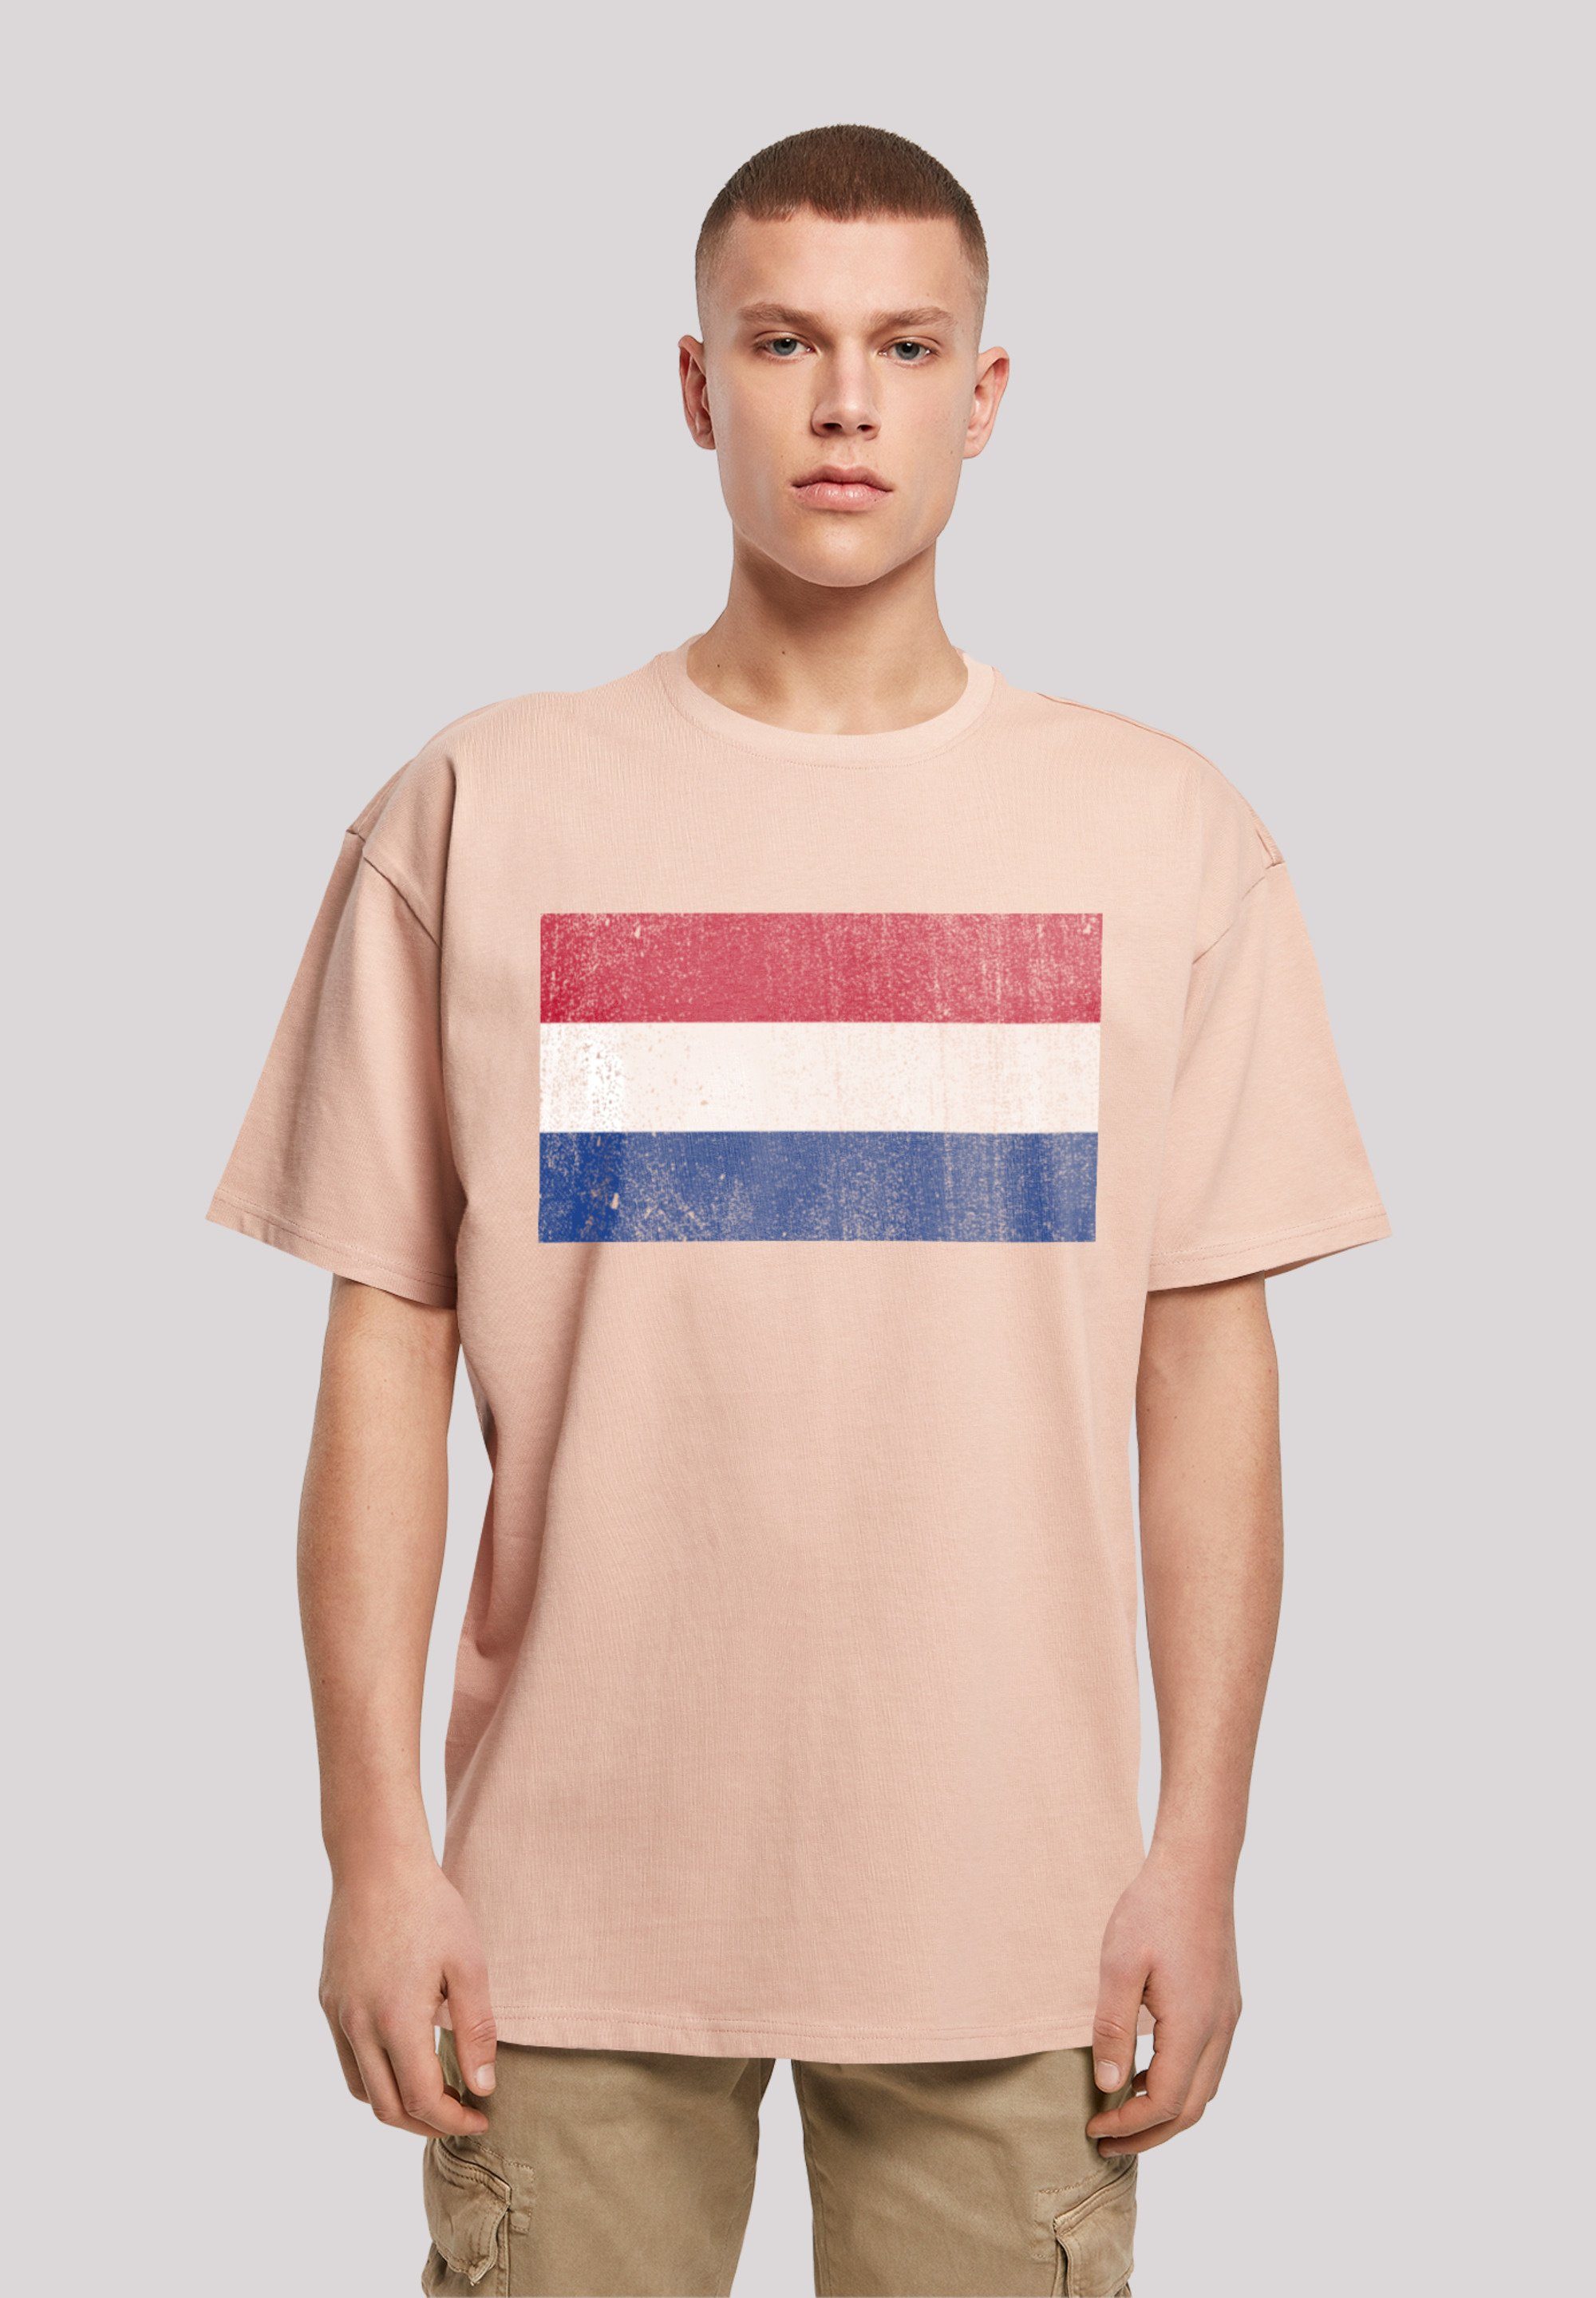 Schultern distressed überschnittene Netherlands Print, F4NT4STIC NIederlande T-Shirt Holland Flagge und Passform Weite